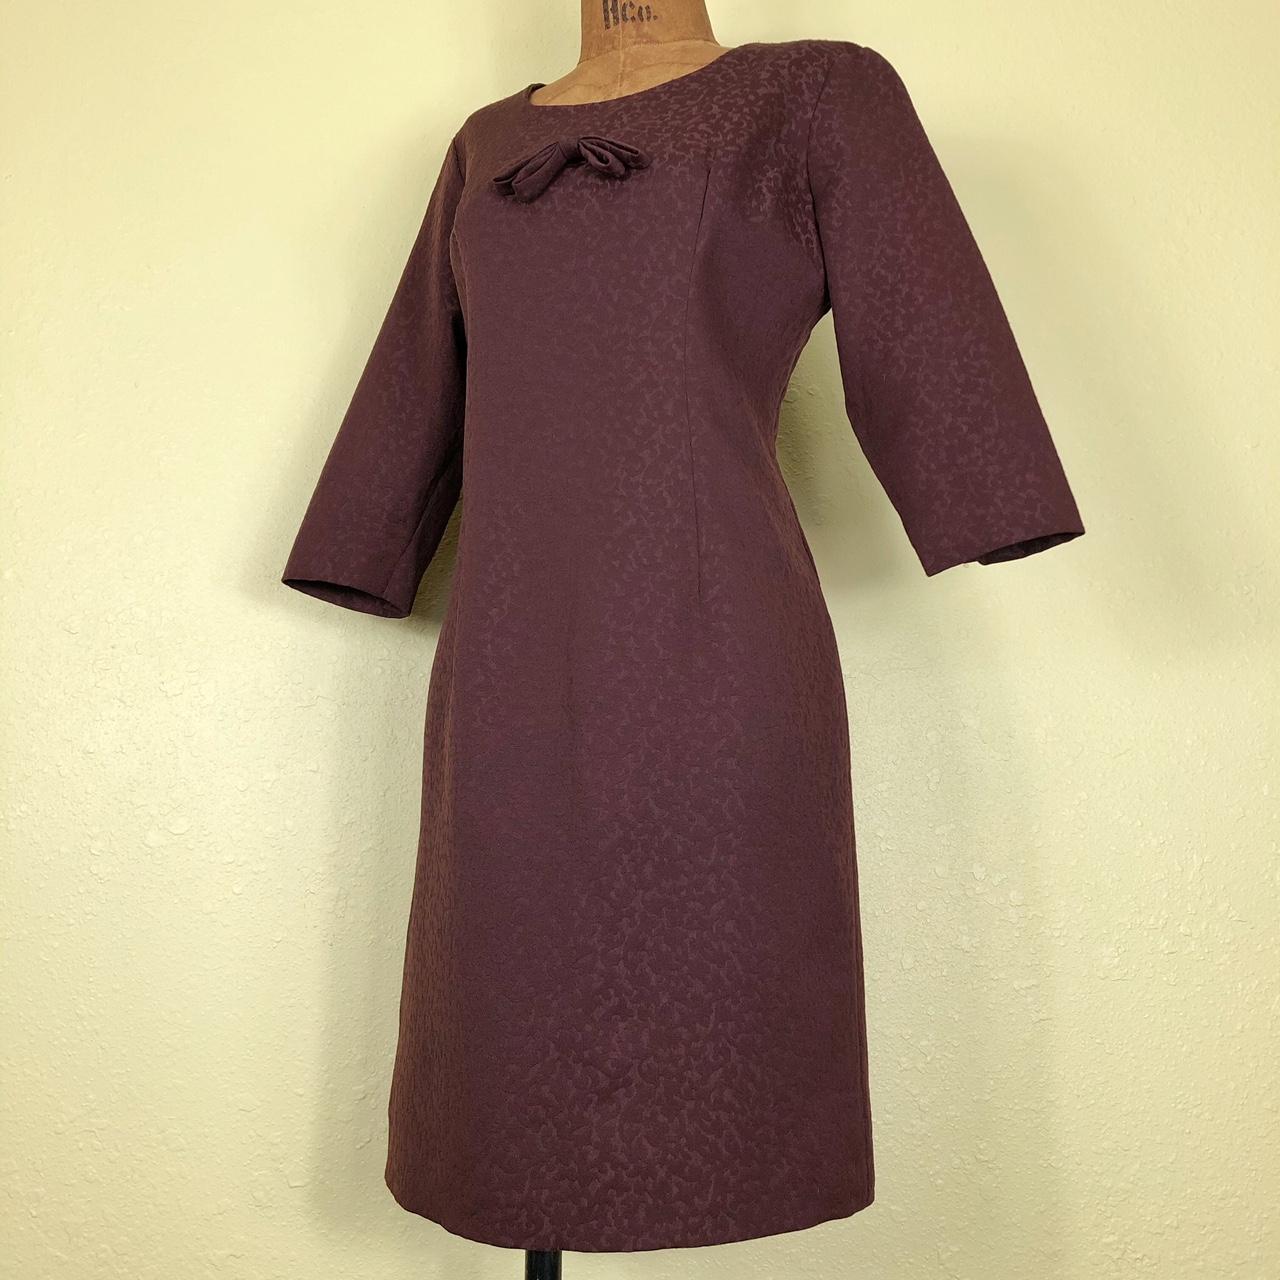 1960s sheath dress. made of brown textured diolen... - Depop